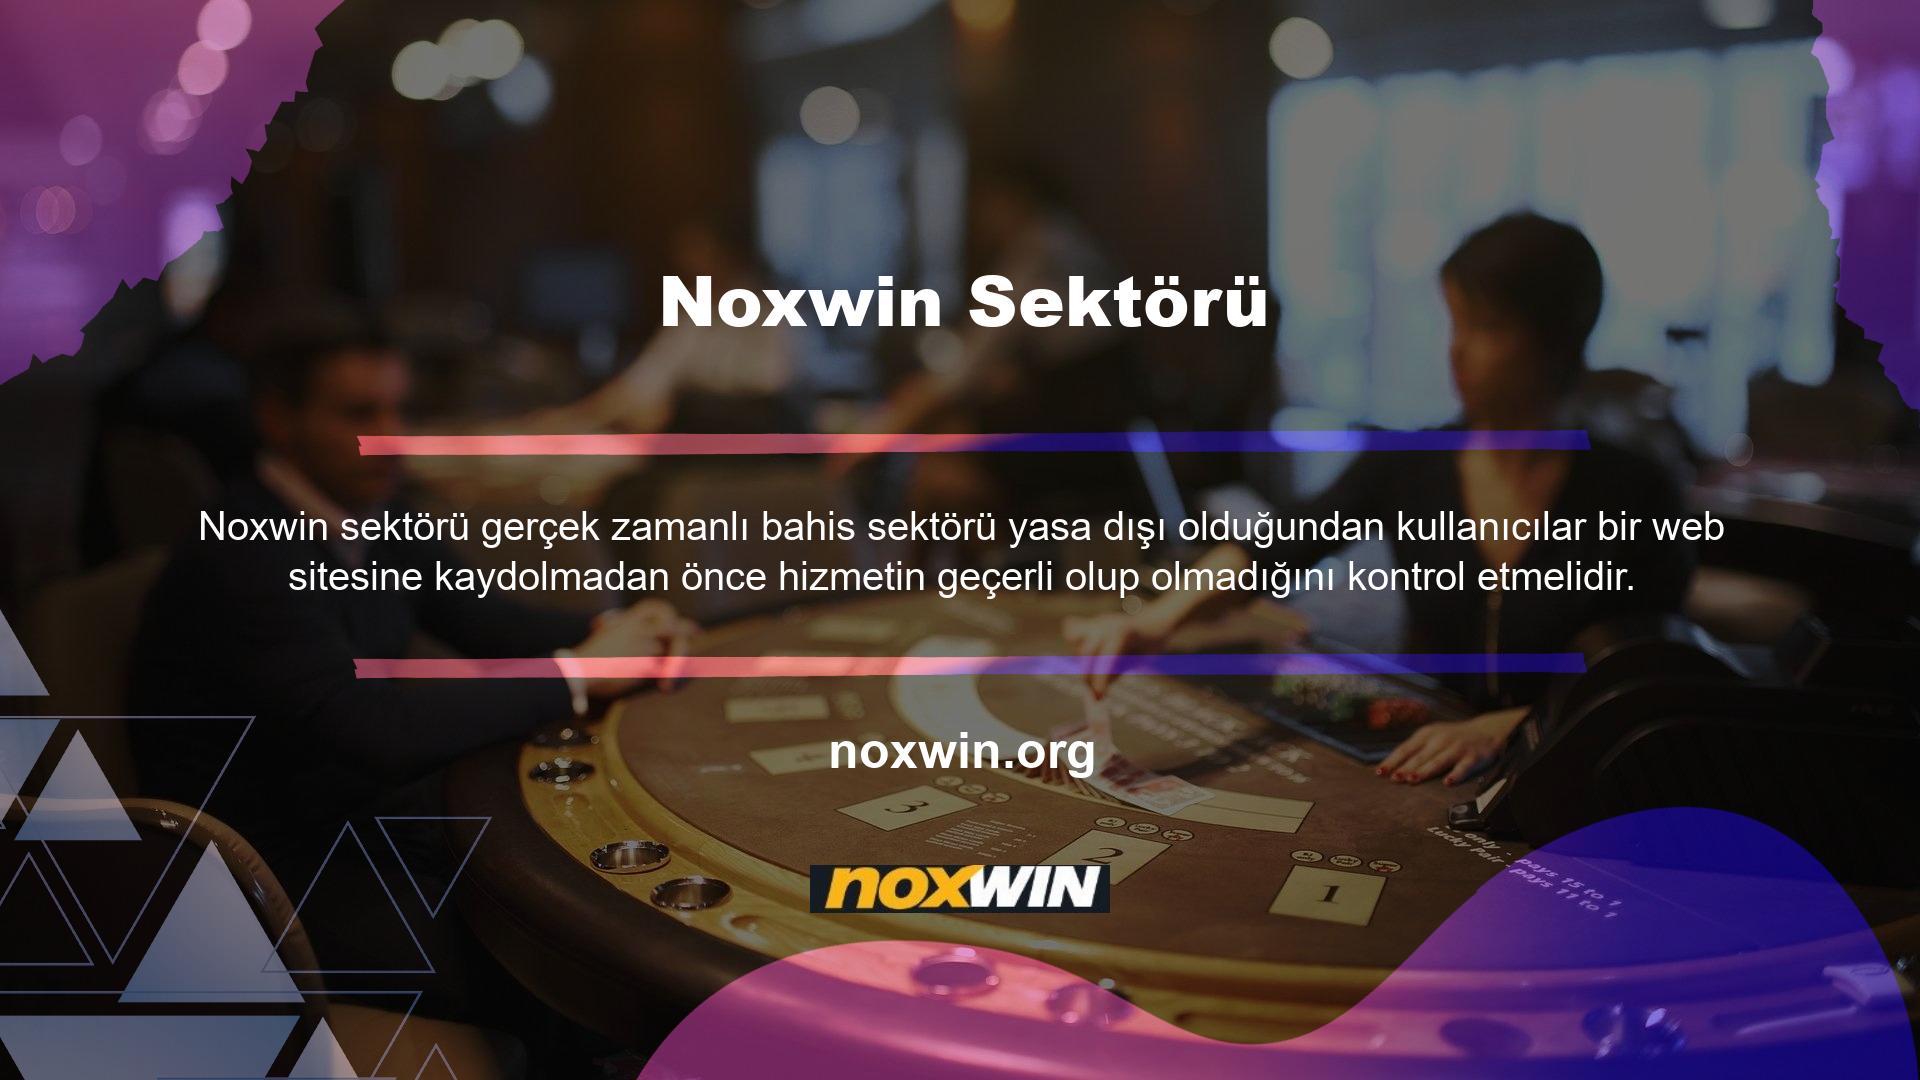 Peki Noxwin canlı bahis sitesi güvenilir midir, ehliyetiniz var mı? Evet, Noxwin lisanslı ve güvenilir bir bahis sitesidir